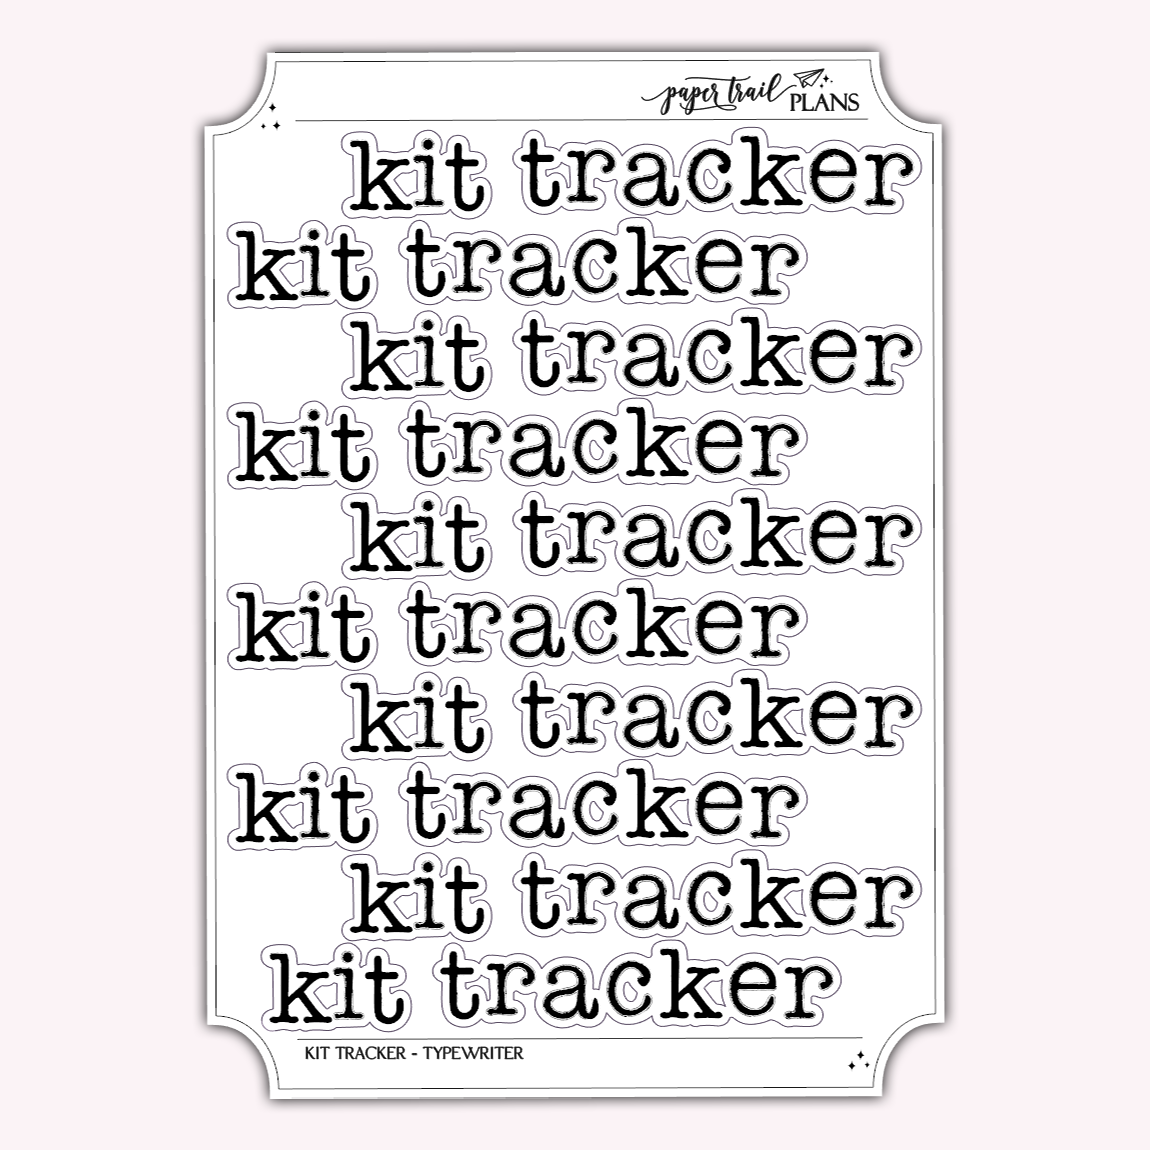 Kit Tracker - Typewriter